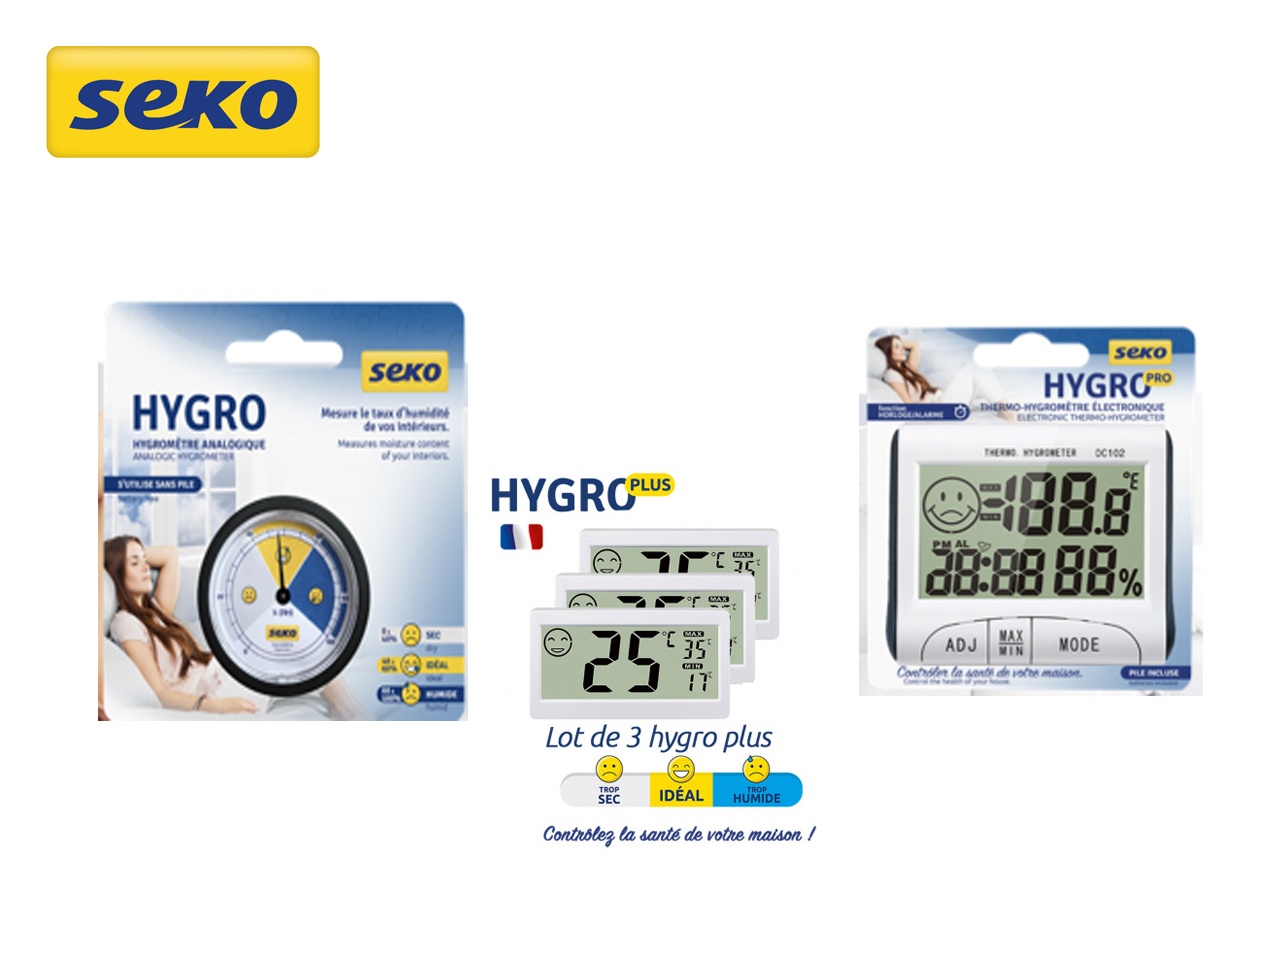 Seko lance une nouvelle gamme d’hygromètres